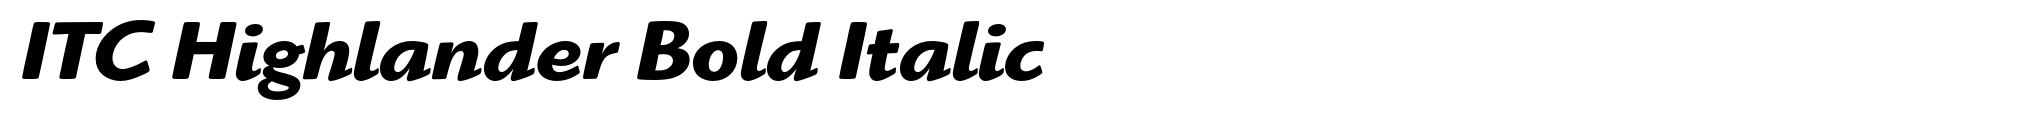 ITC Highlander Bold Italic image